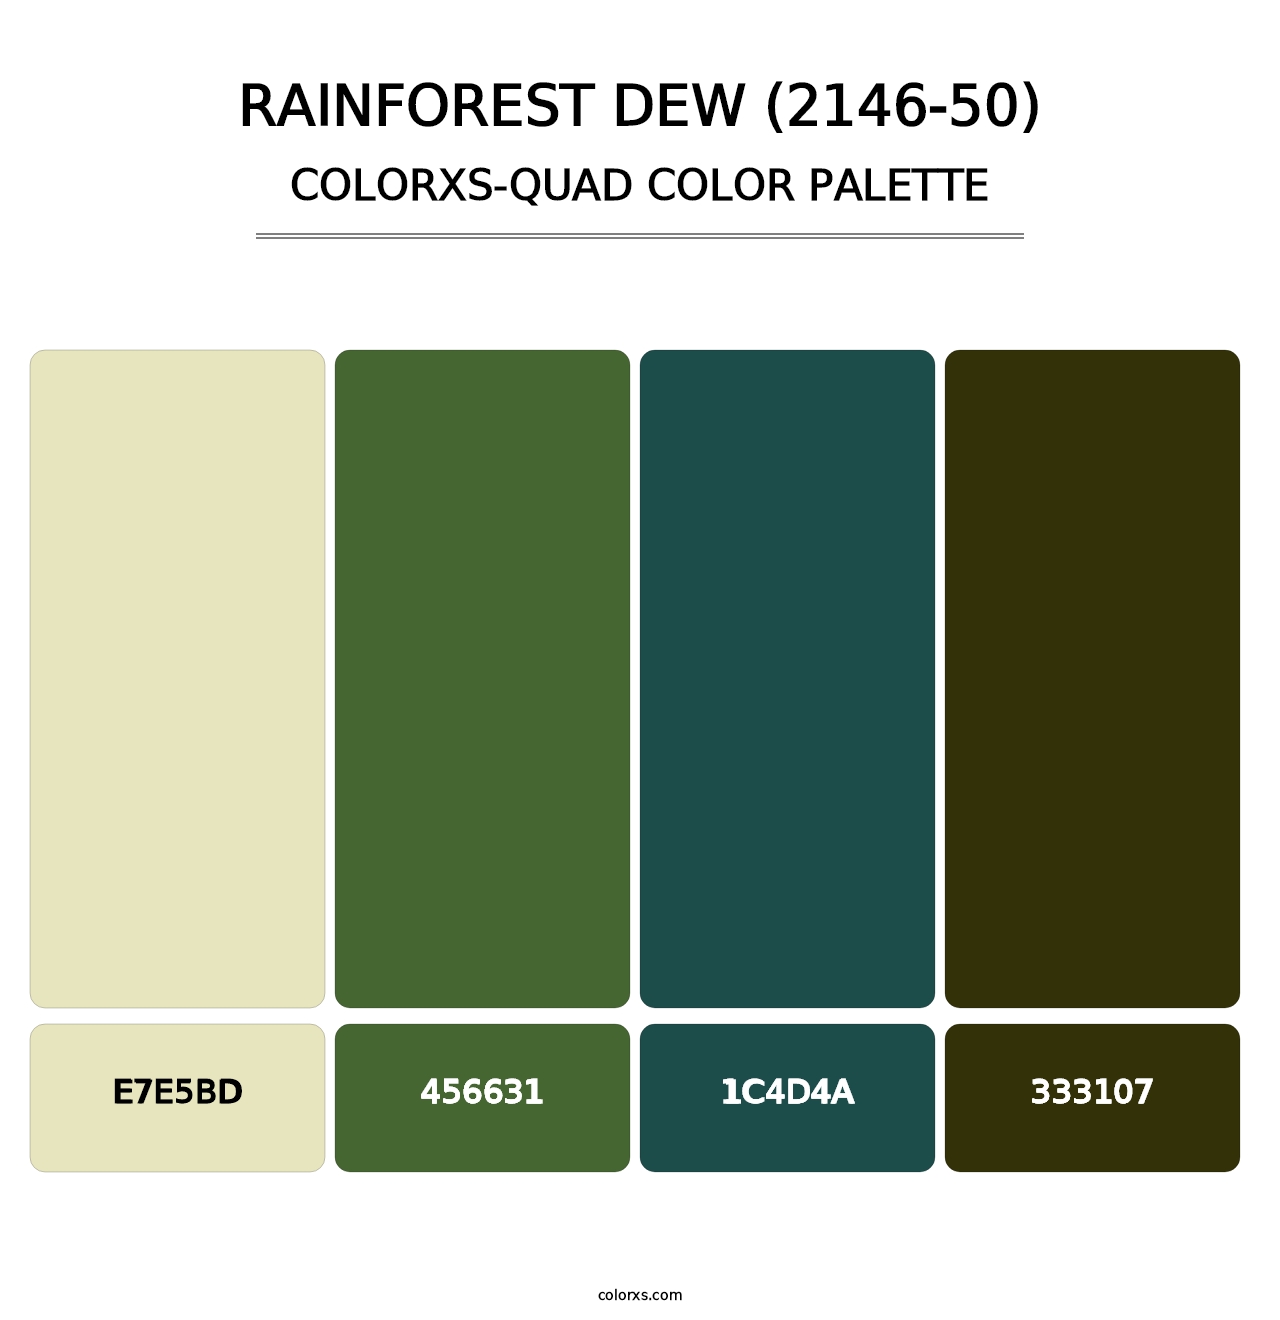 Rainforest Dew (2146-50) - Colorxs Quad Palette